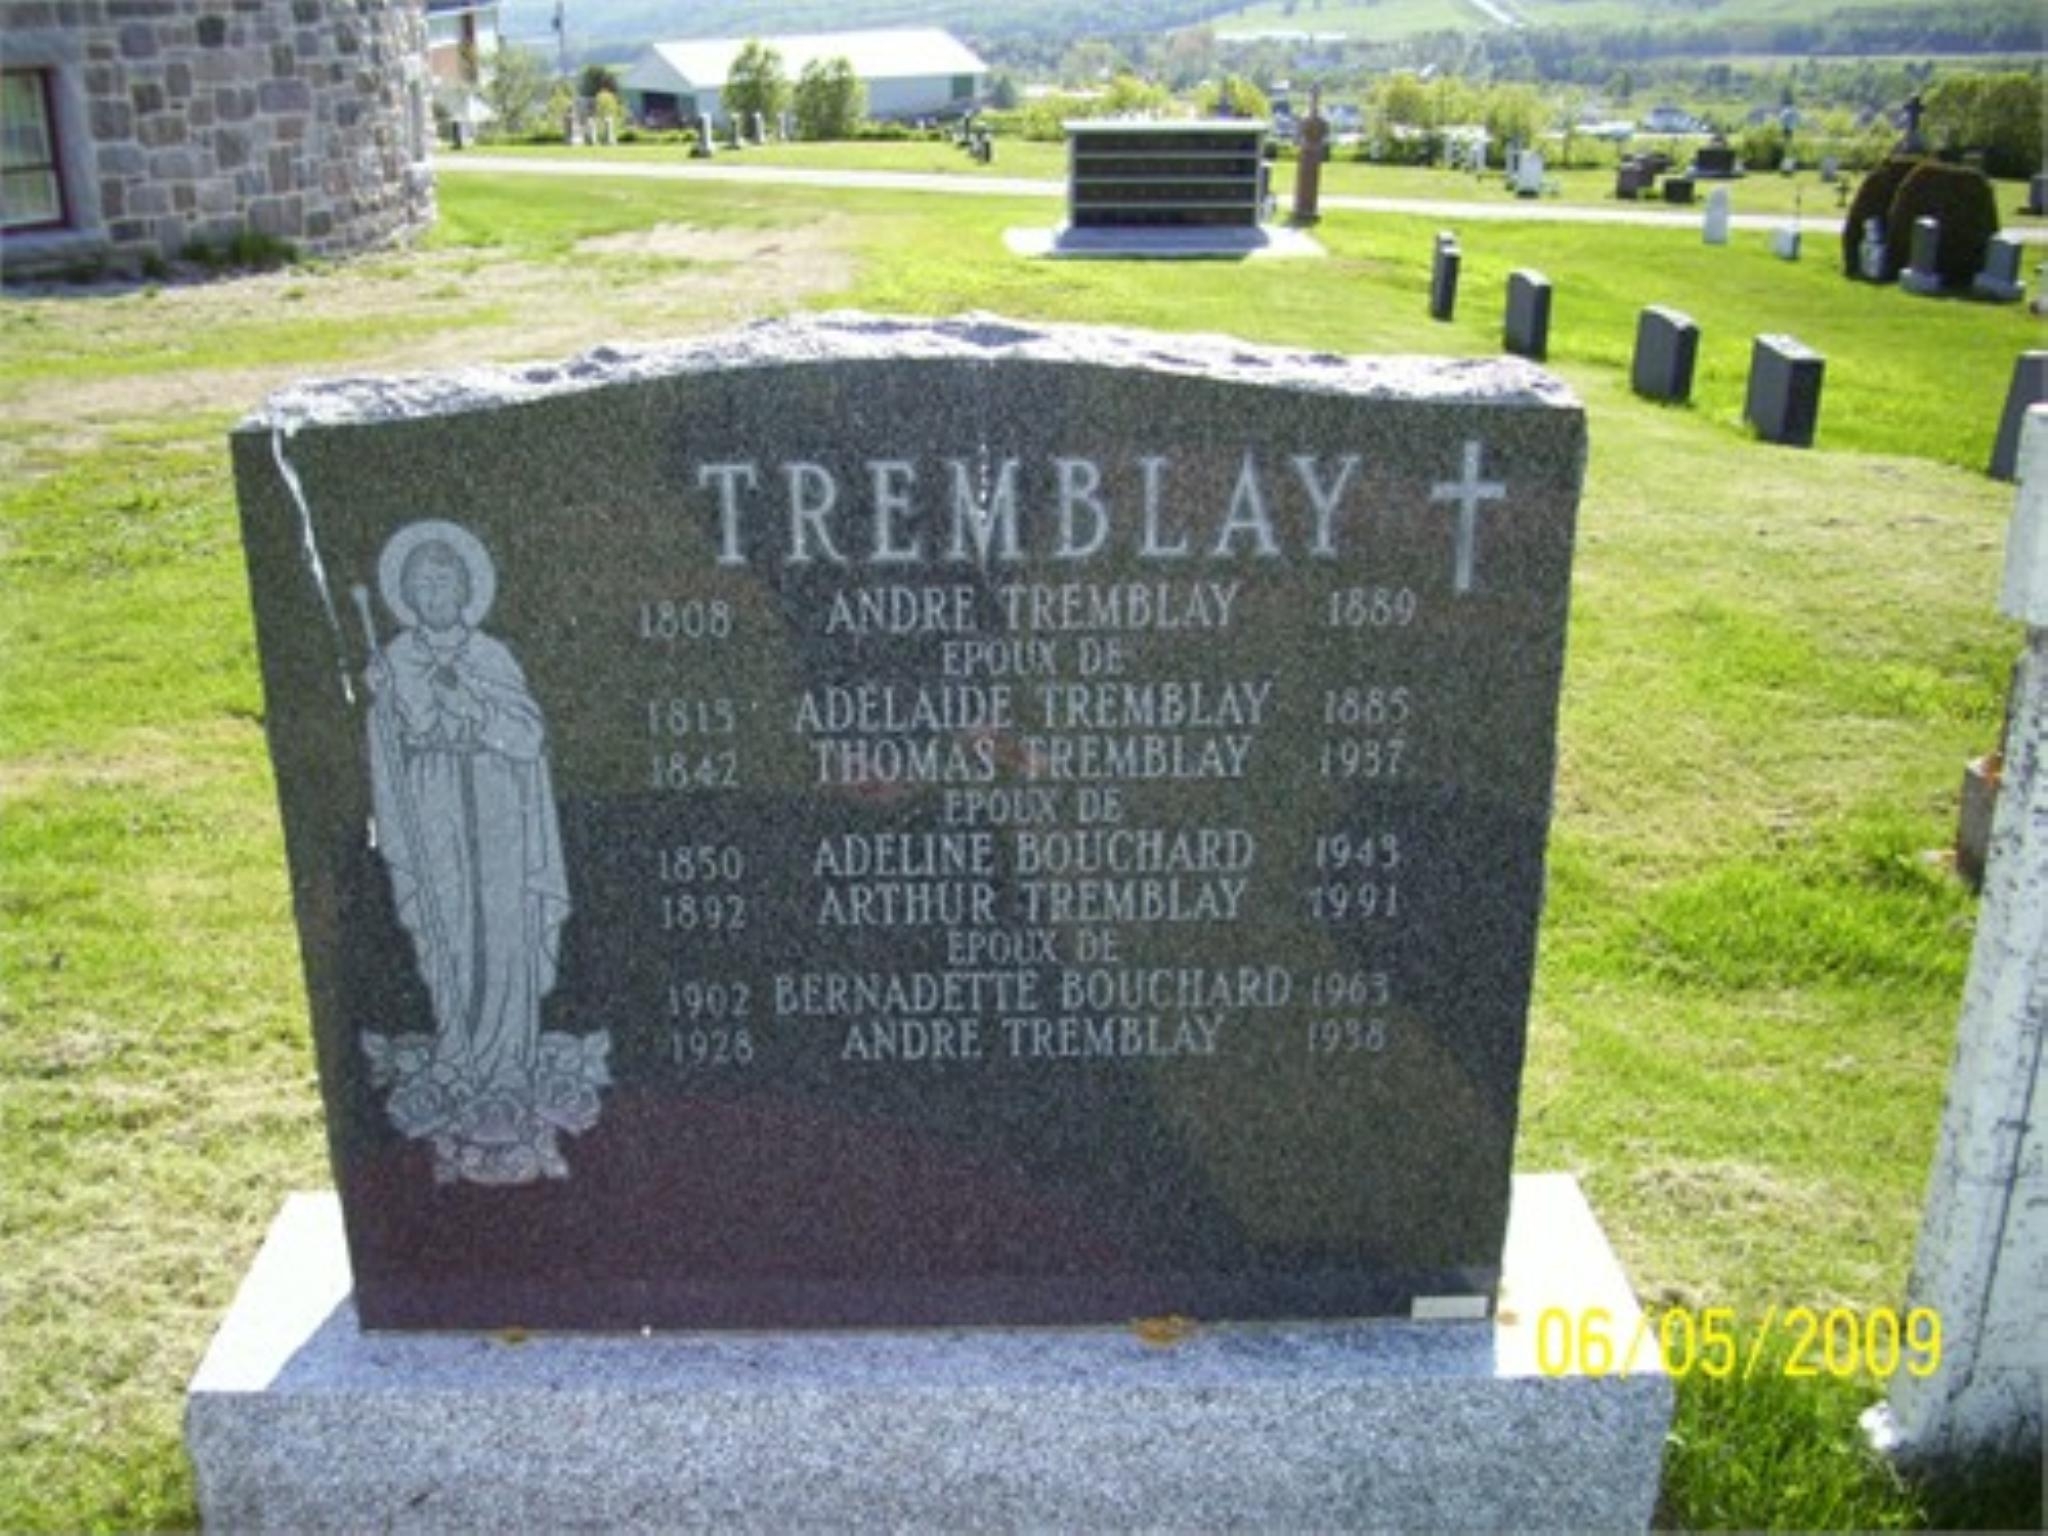 Adelaide Tremblay gravesite